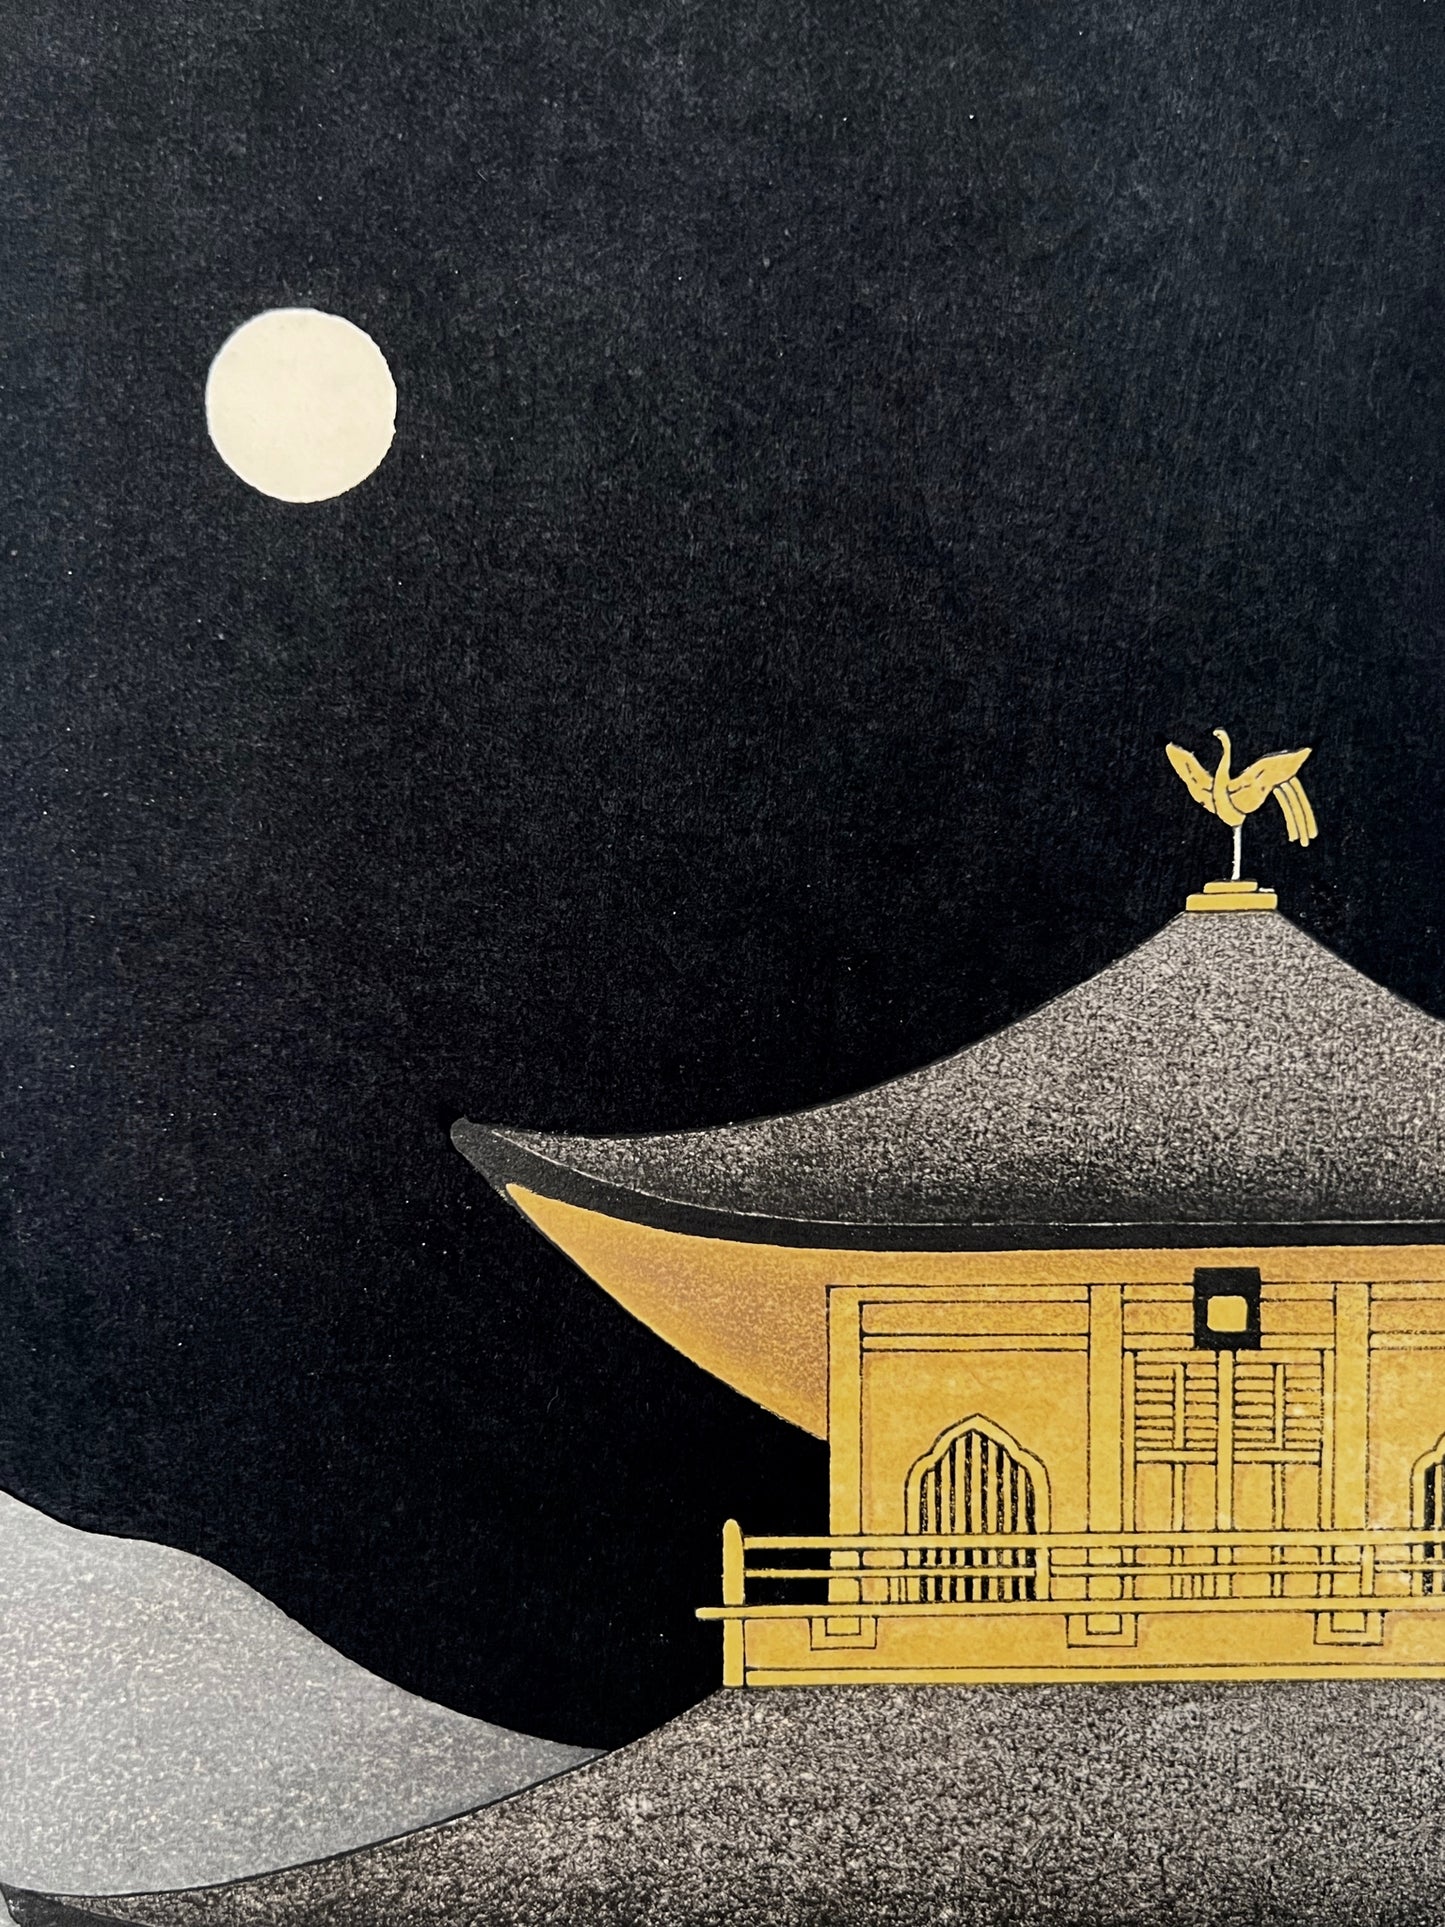 estampe japonaise contemporaine pavillon d'or kinkakuji nuit de pleine lune, gros plan lune et phoenix